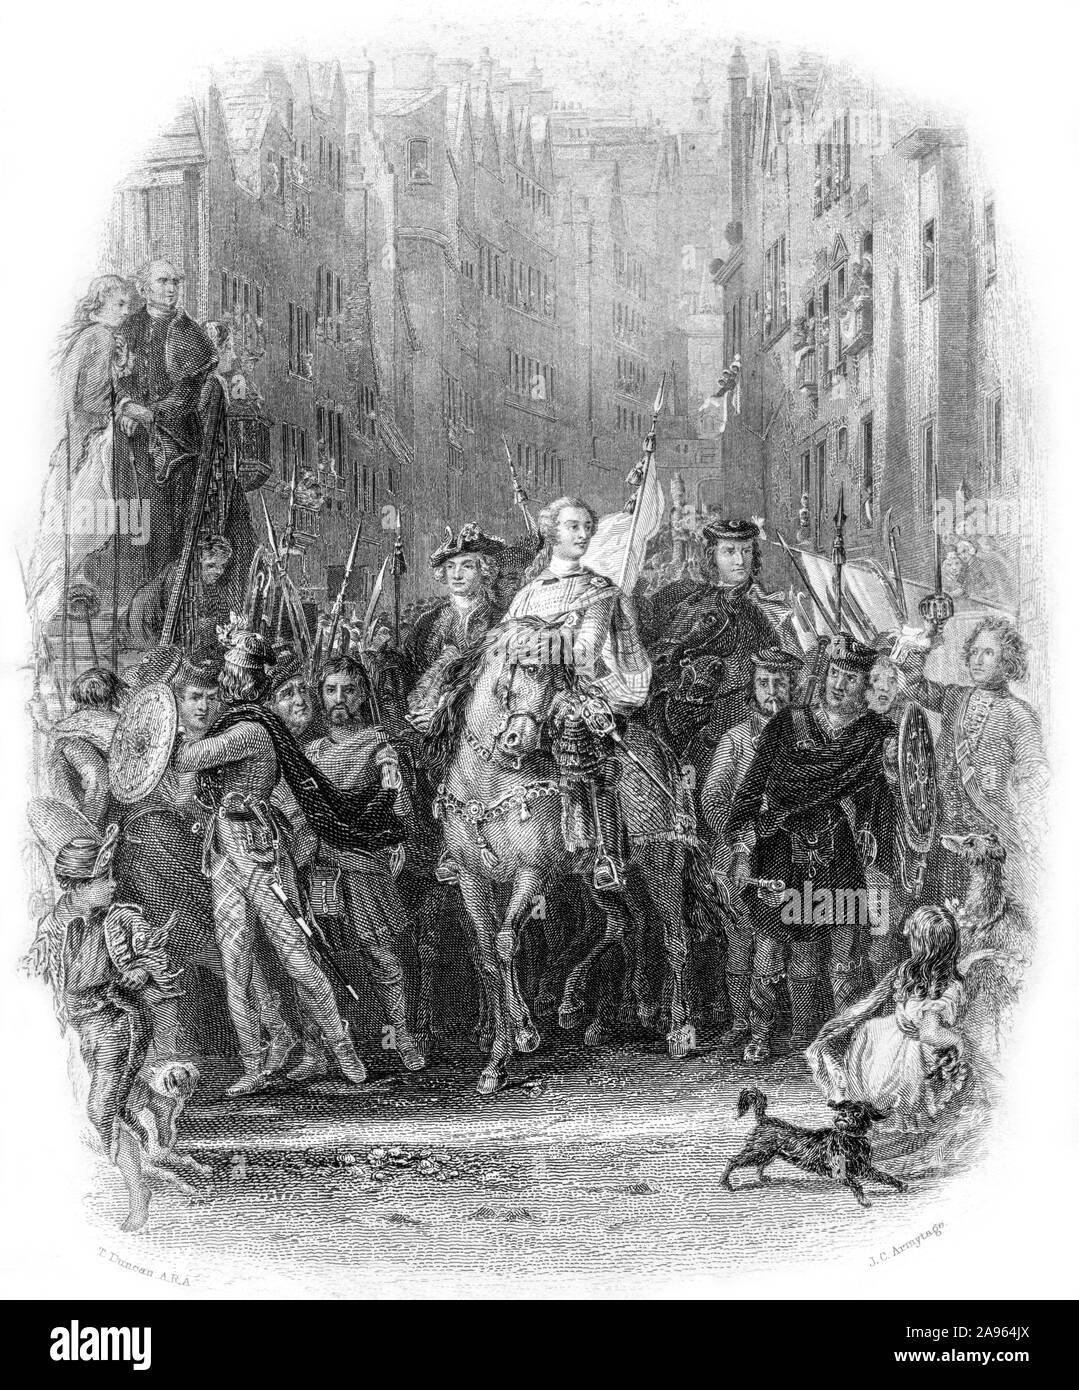 Ein Kupferstich von Prinz Charles Edward Stuart (Bonnie Prince Charlie) und die Highlanders in Edinburgh nach der Schlacht von Preston Pans (1745). Stockfoto